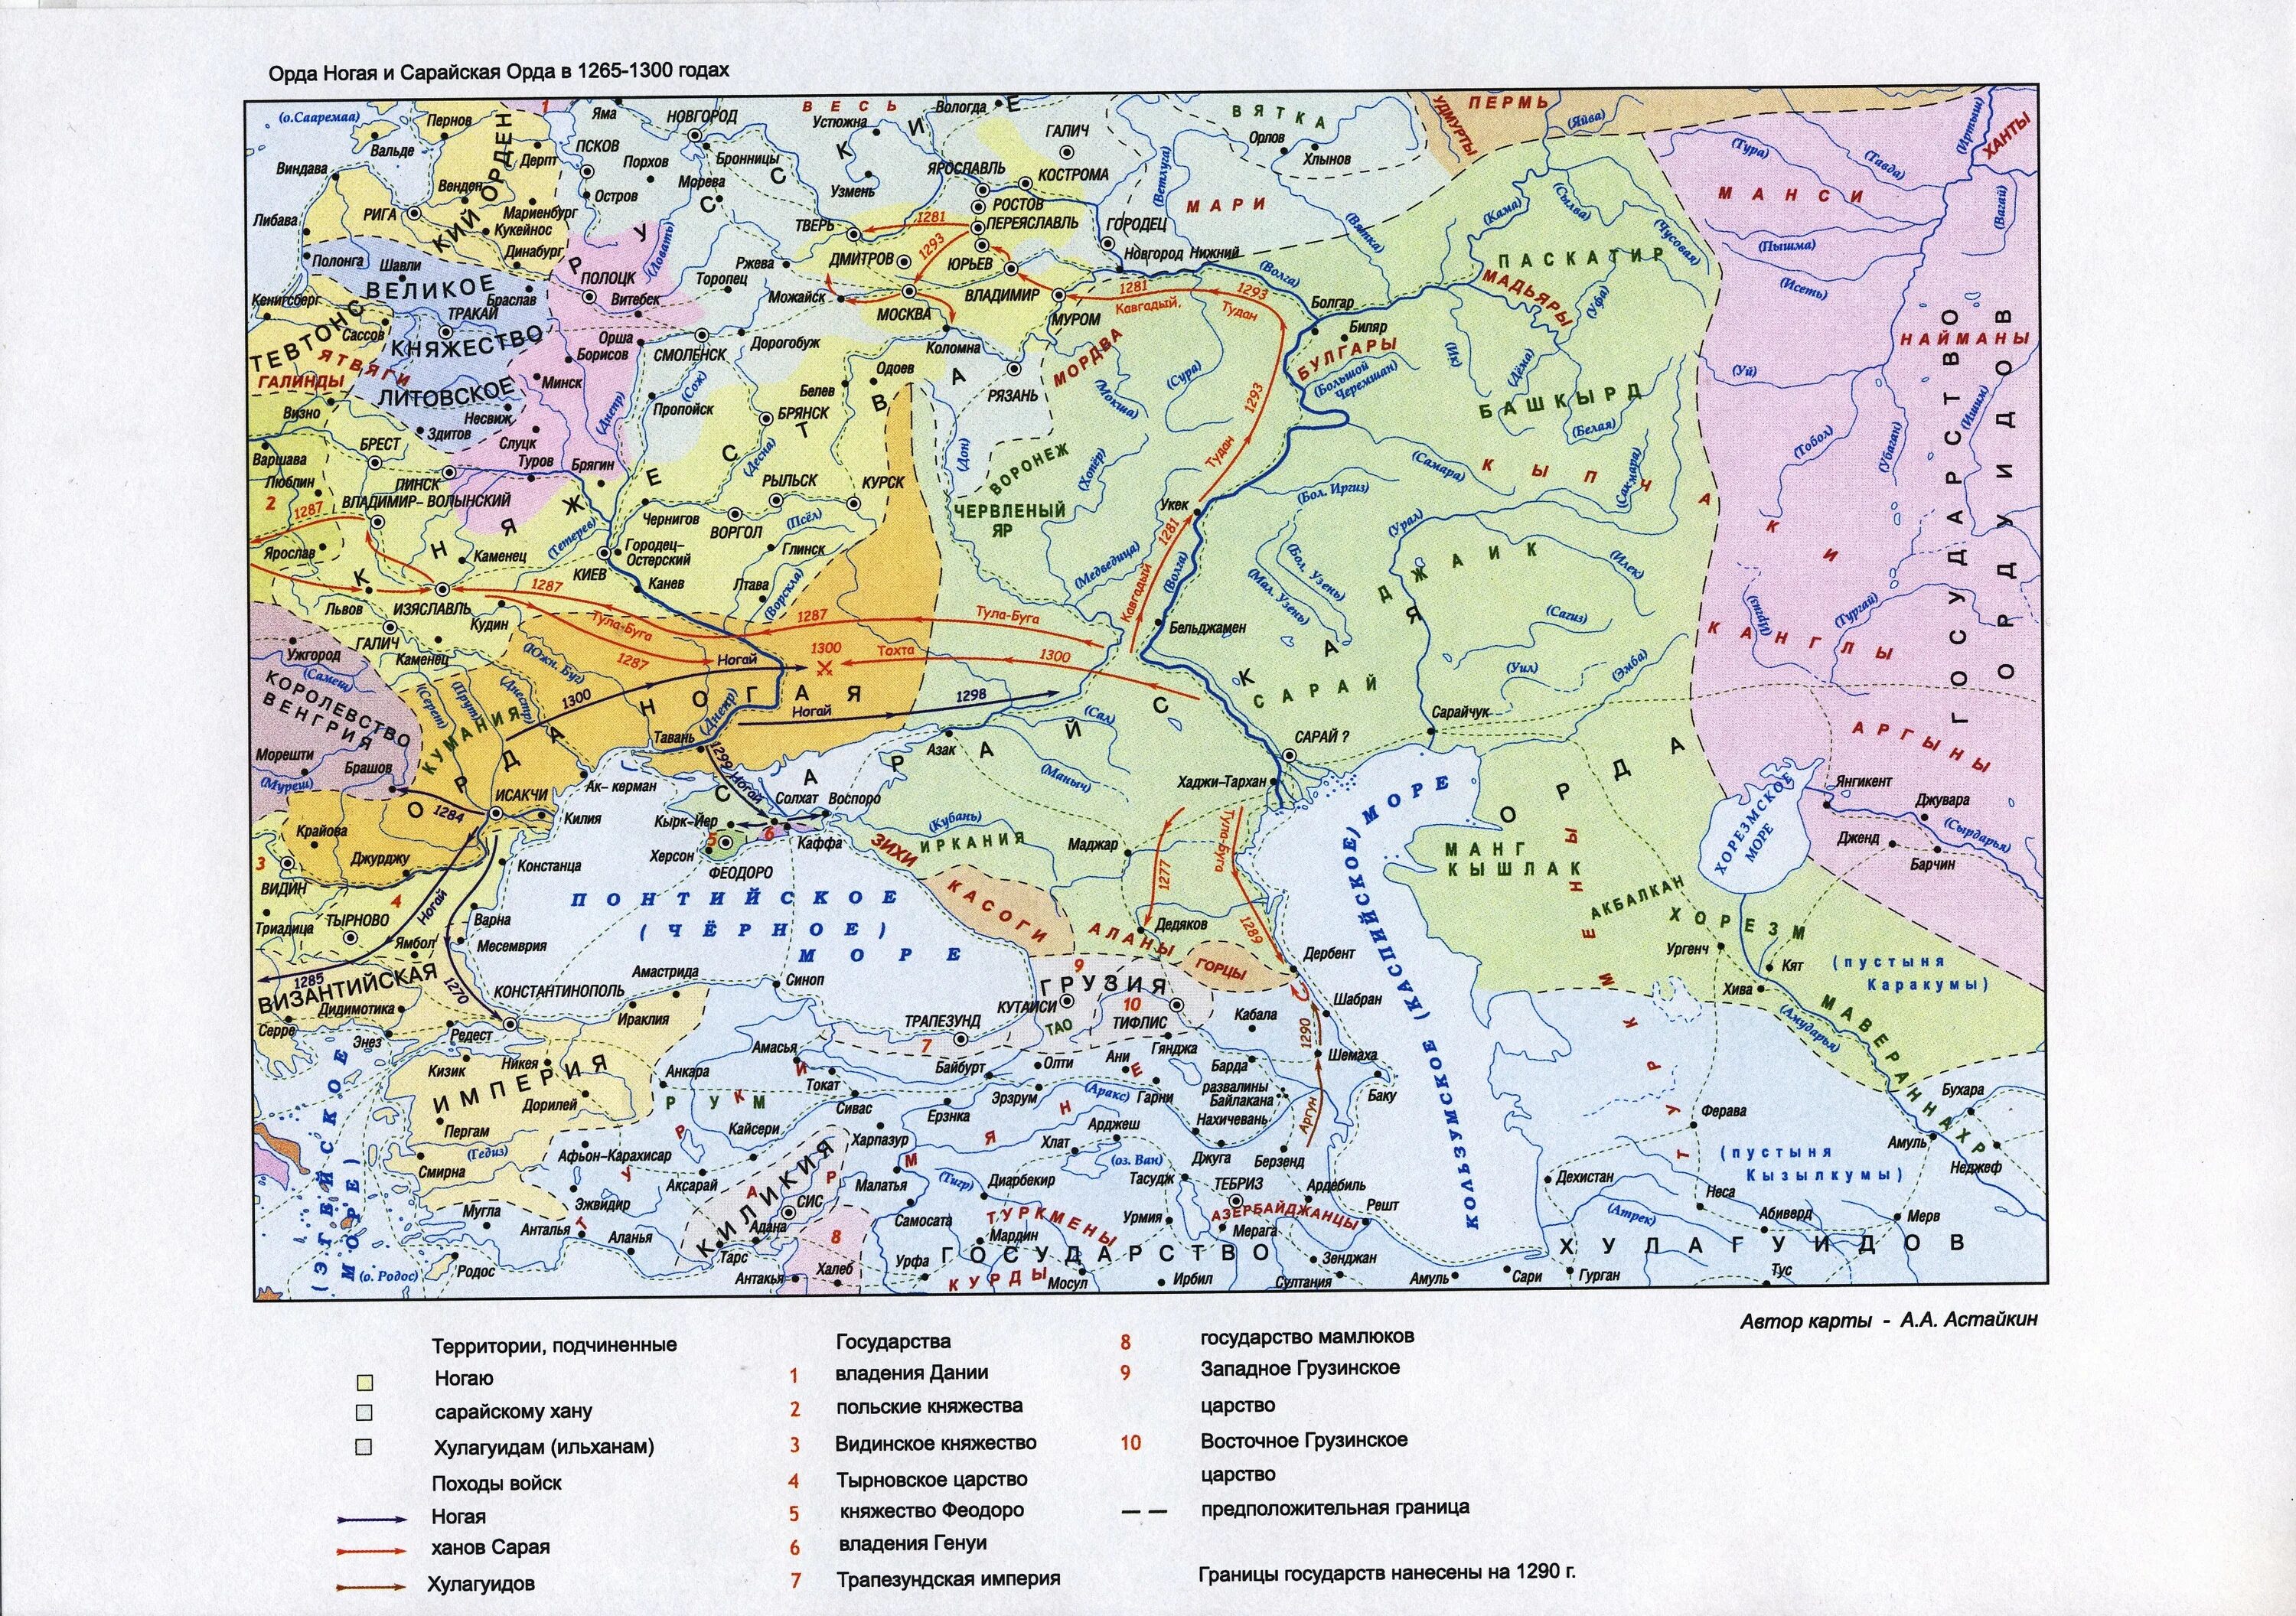 Название столицы золотой орды. Карта золотой орды 13 век. Карта золотой орды 14 века. Карта золотой орды 15 век. Золотая Орда в 14 веке карта.